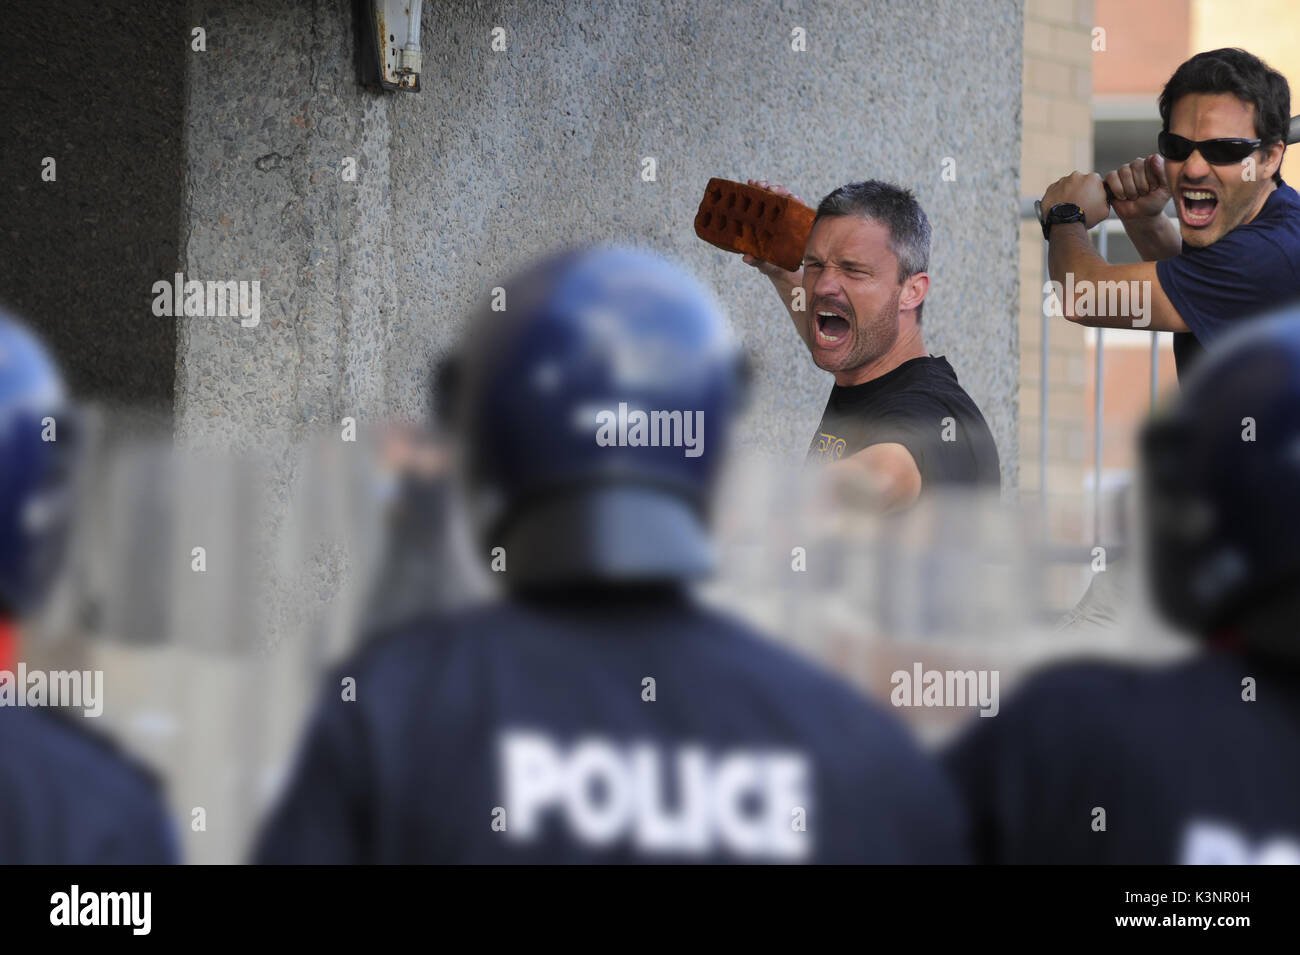 Polizei riot Ausbildung Szenario in Aktion. Die Polizei von Aktivisten Halteziegel konfrontiert zu werden. Western Australian Polizei. Stockfoto